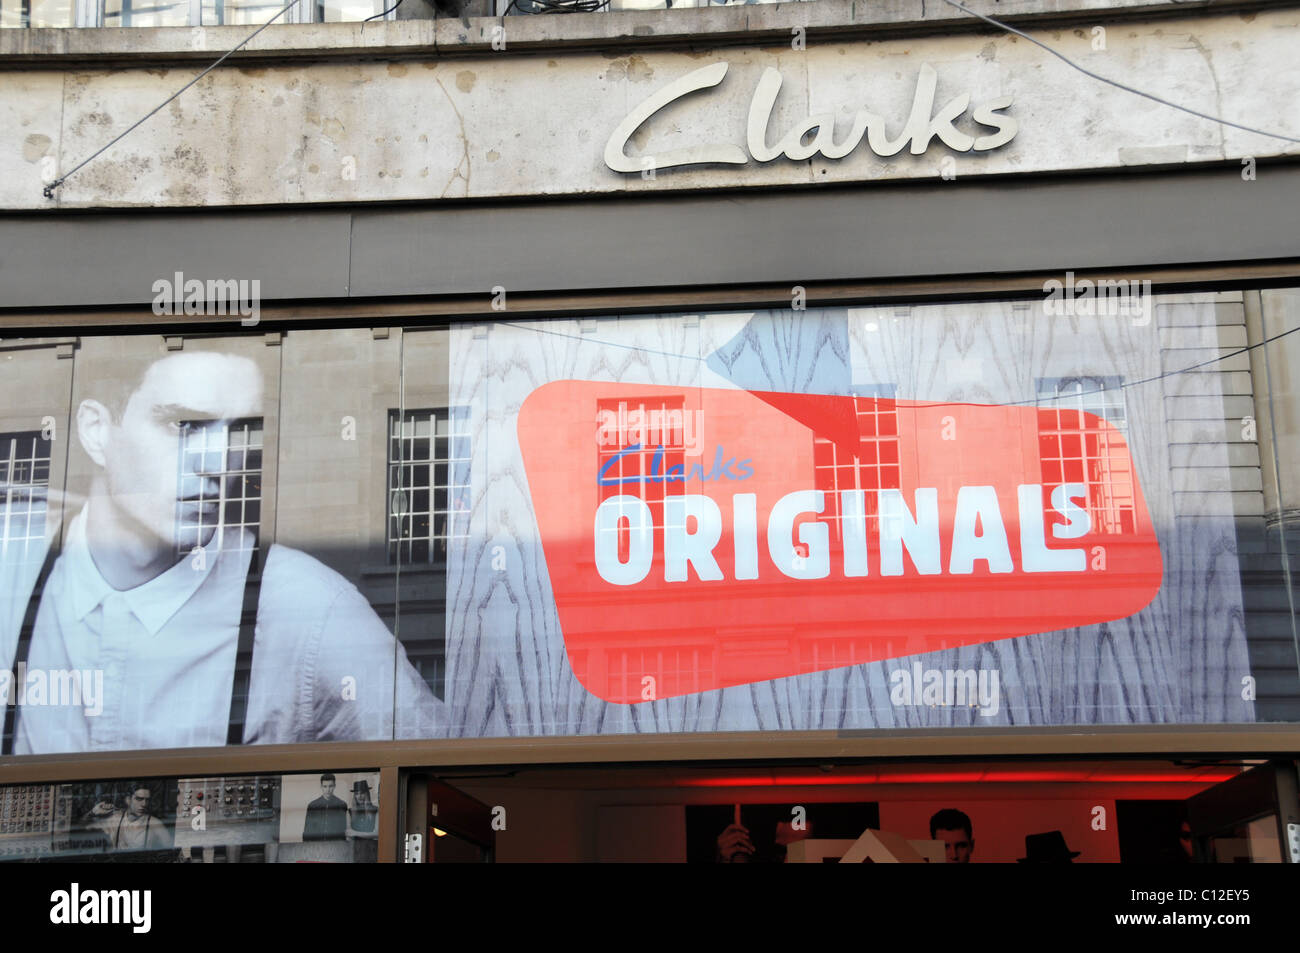 clarks originals shop